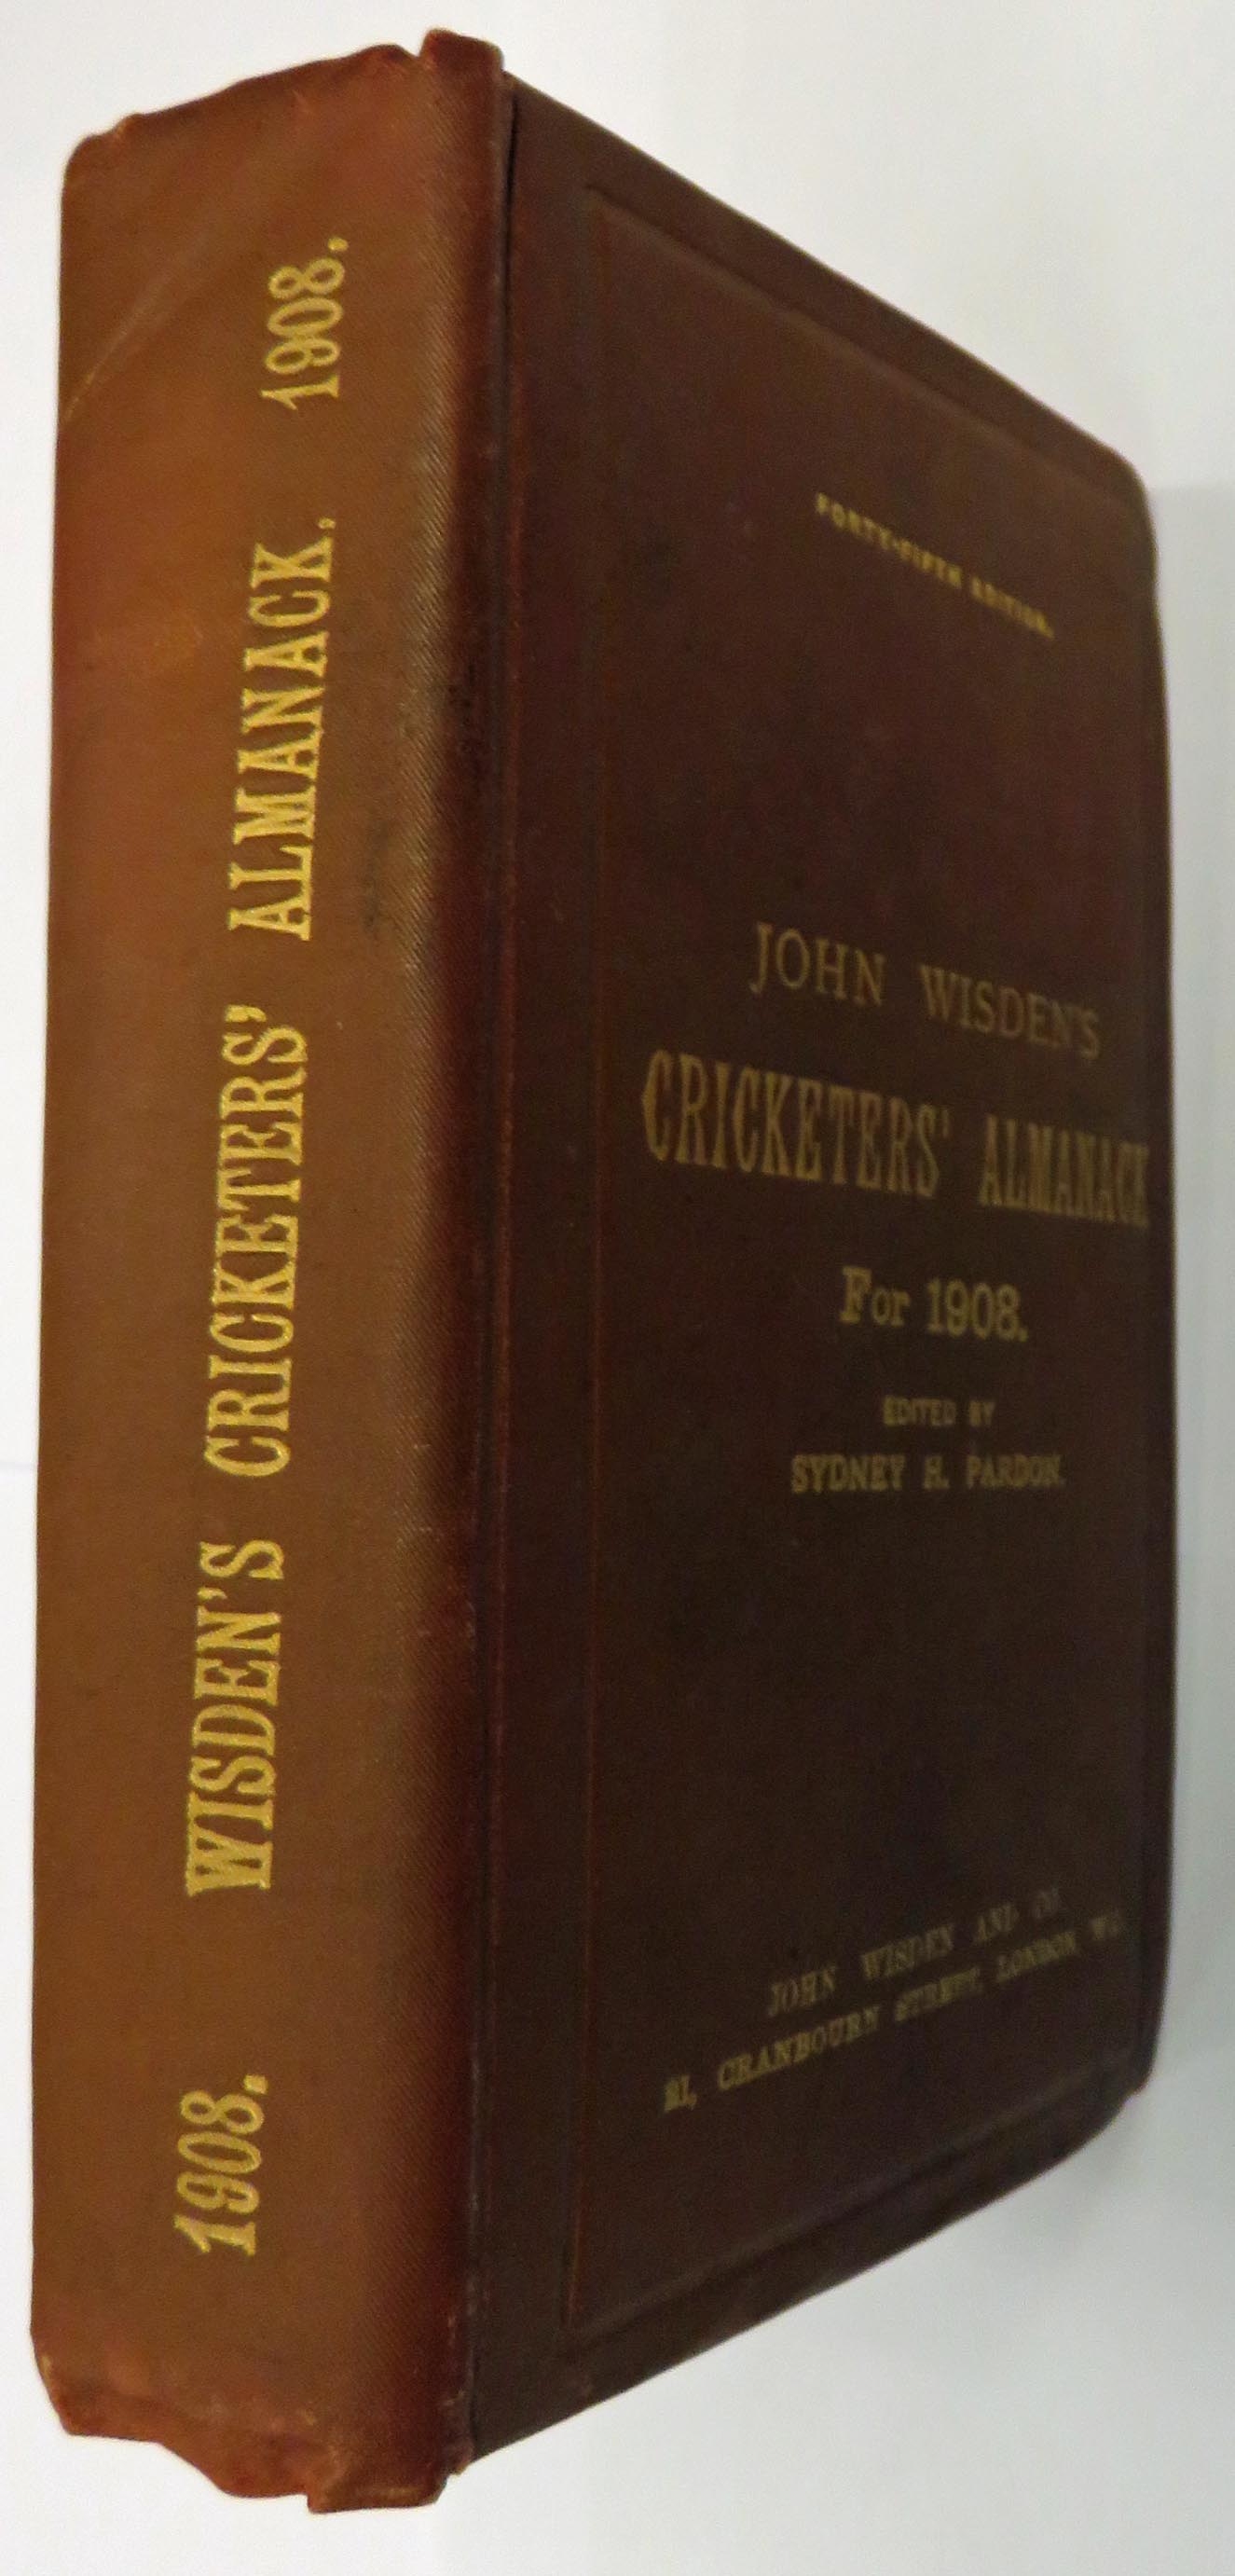 John Wisden's Cricketers' Almanack For 1908